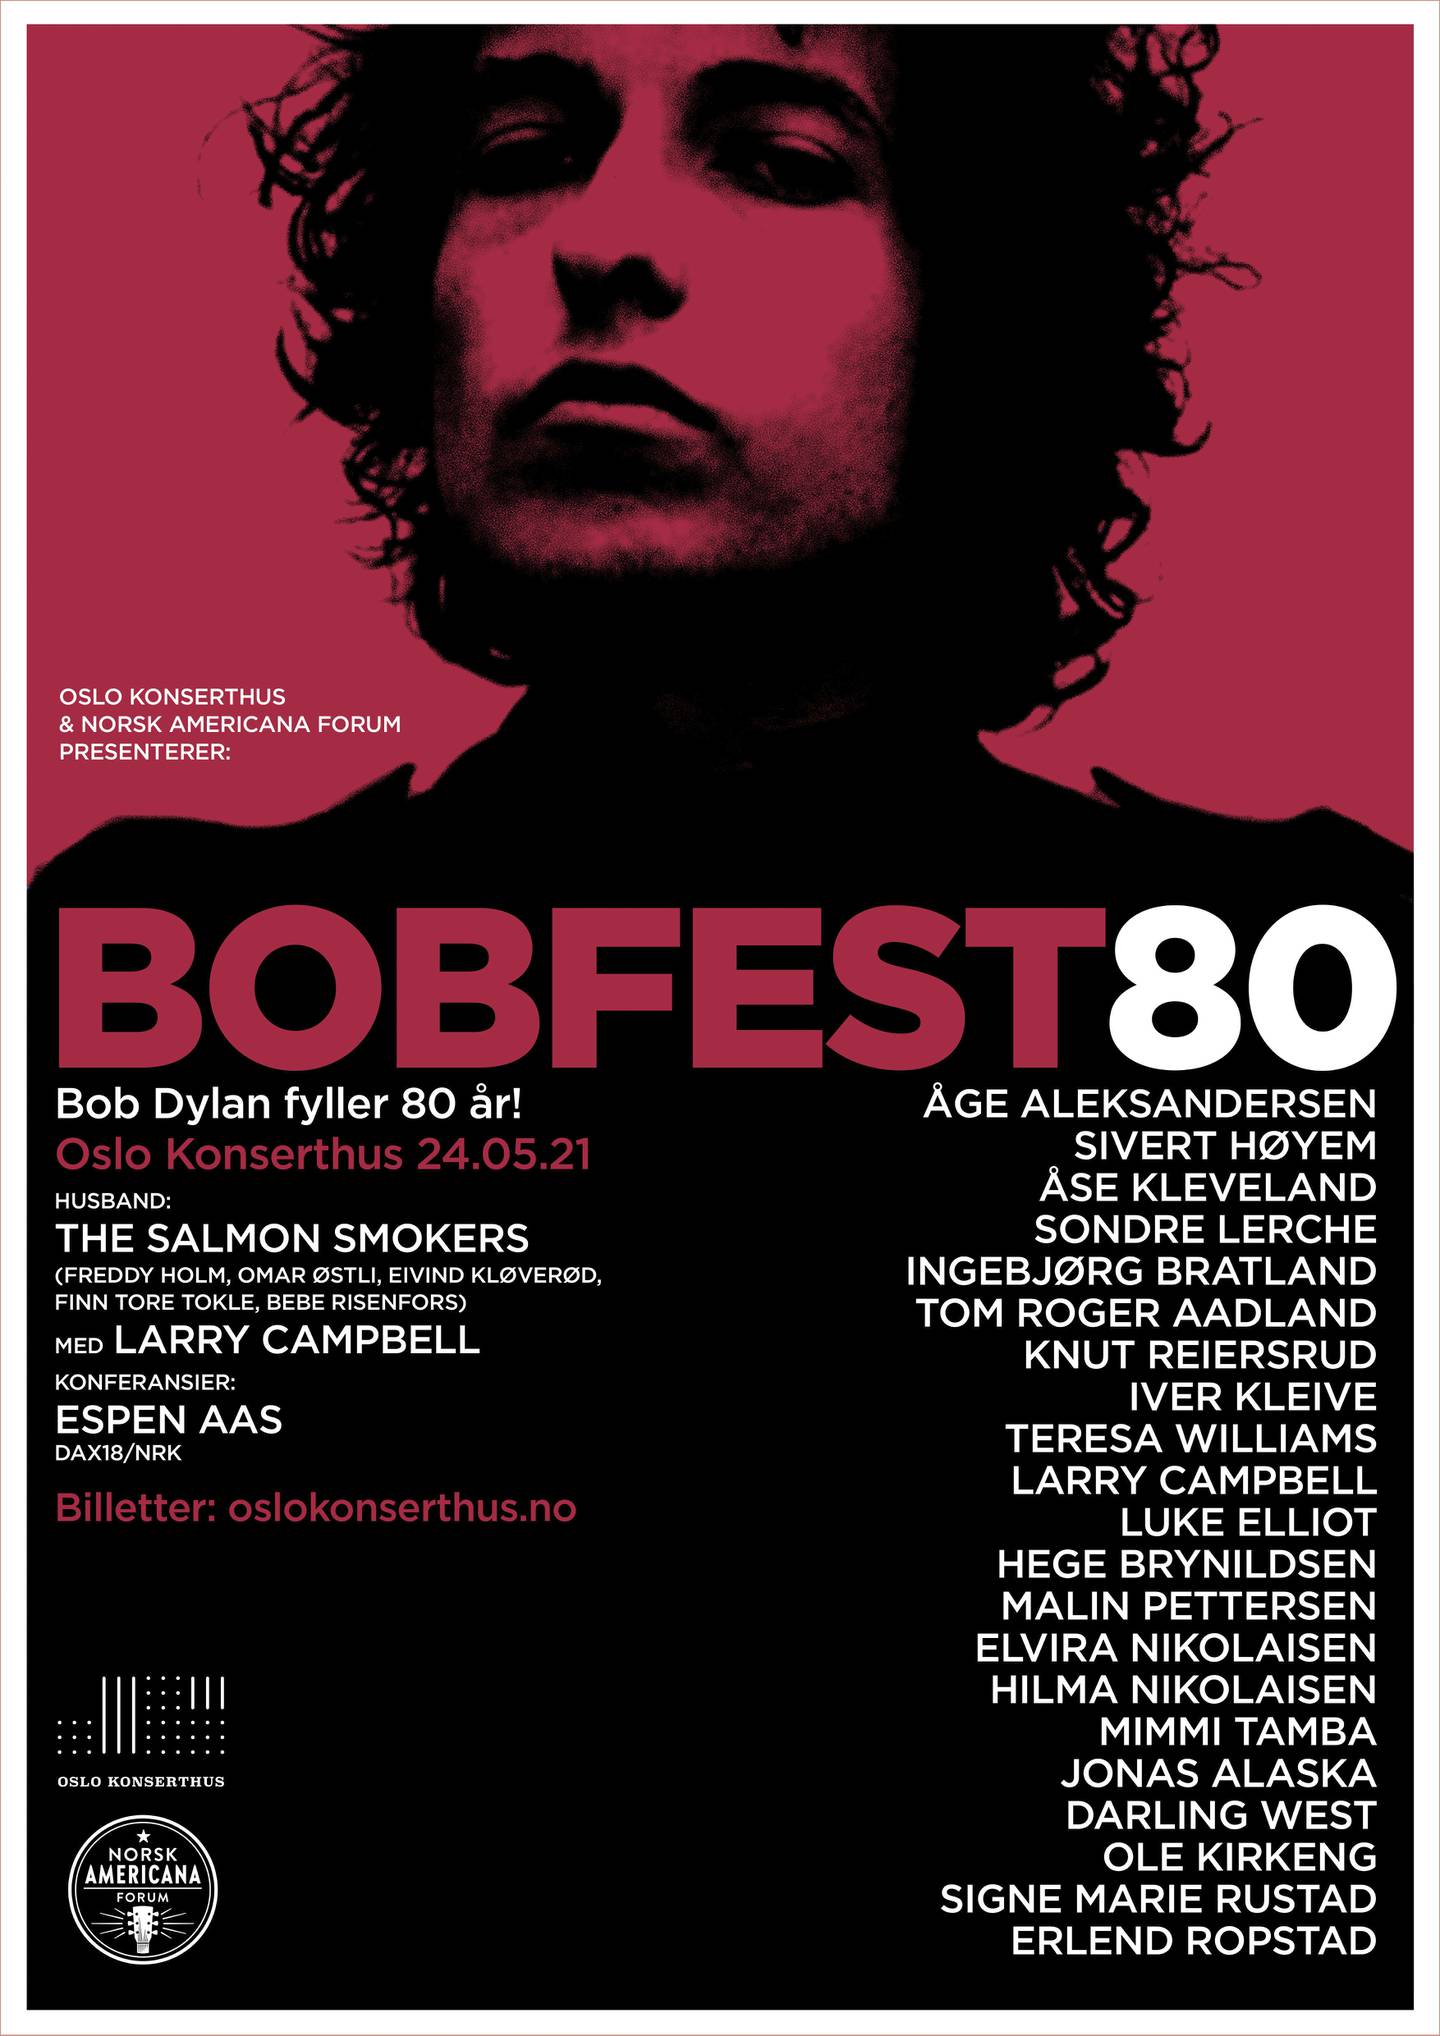 Et sterkt stjernelag av norske artister stiller opp i BobFest80 i Oslo Konserthus, som også skal filmes av NRK og vises der etter hvert.